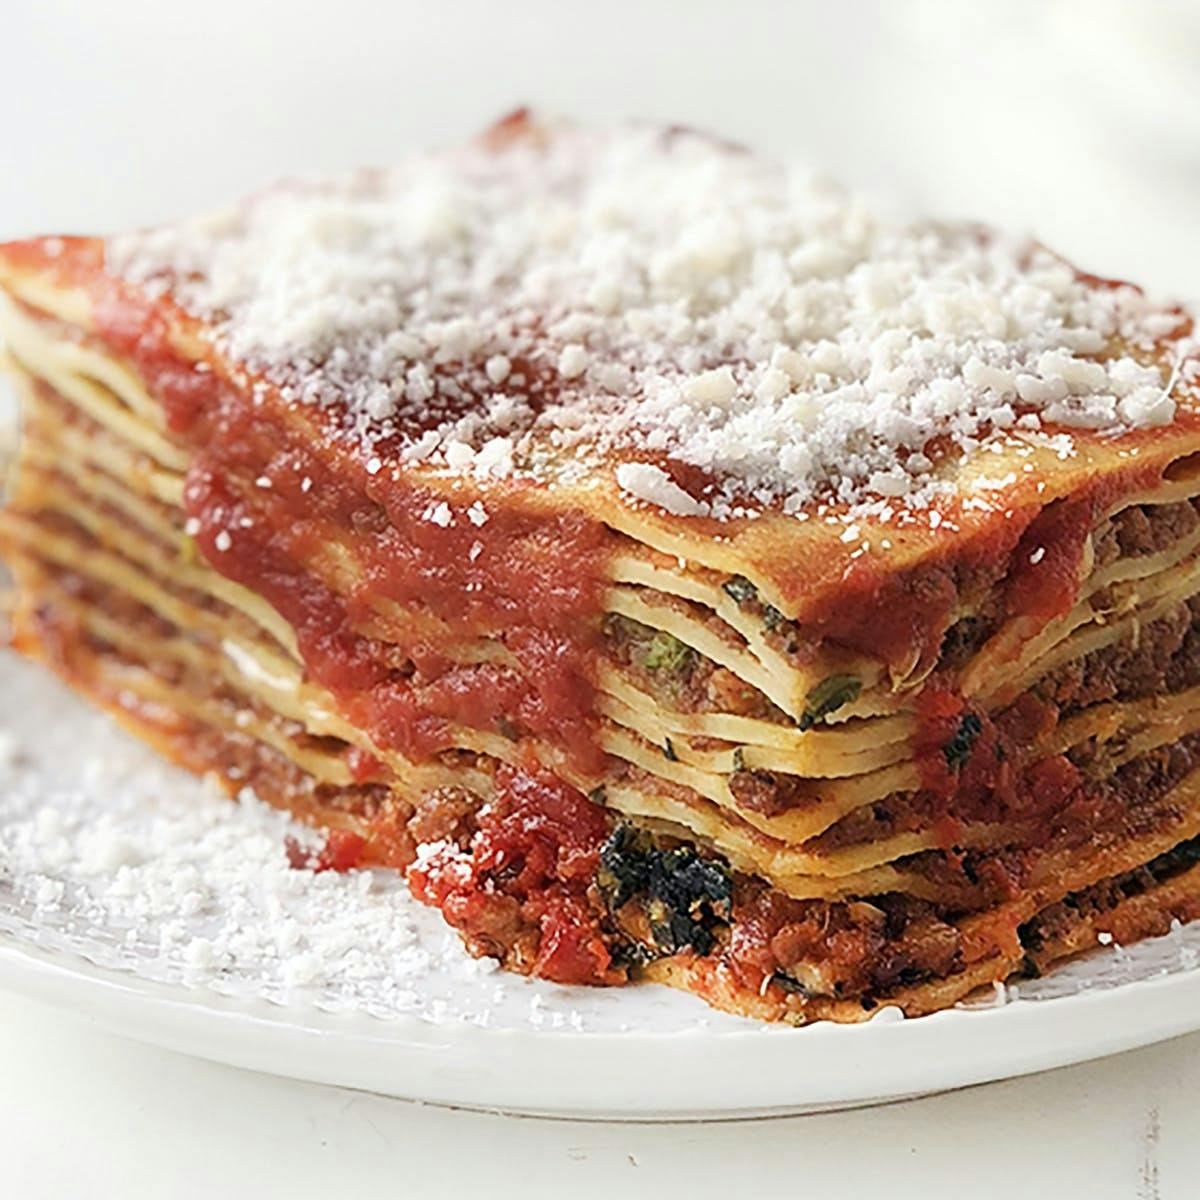 This Lasagna Pan Makes Lasagna 3 Ways in 1 Pan, Dani Meyer